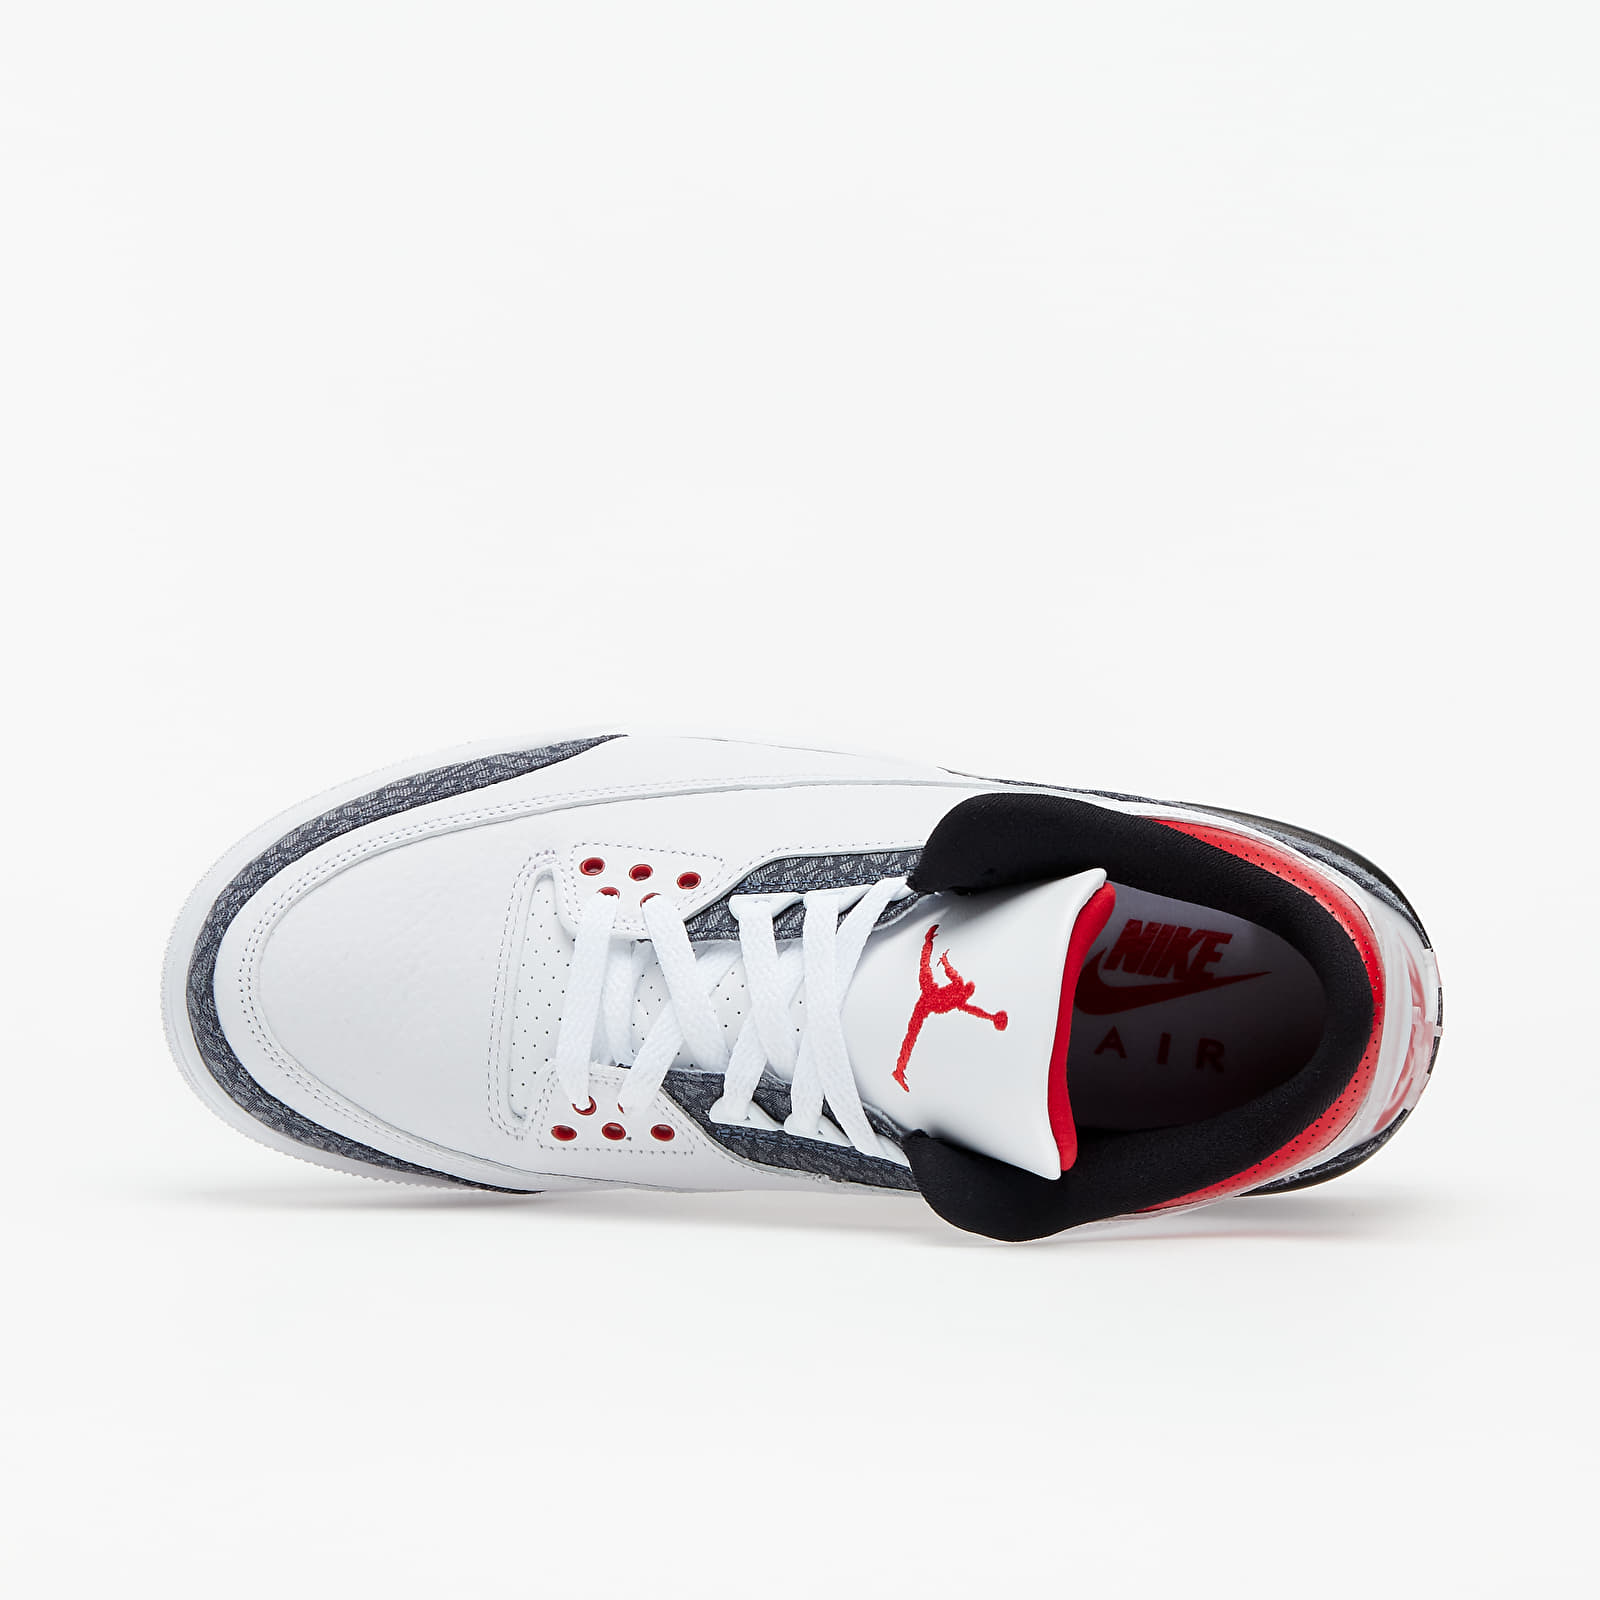 Men's shoes Air Jordan 3 Retro SE White/ Fire Red-Black | Footshop